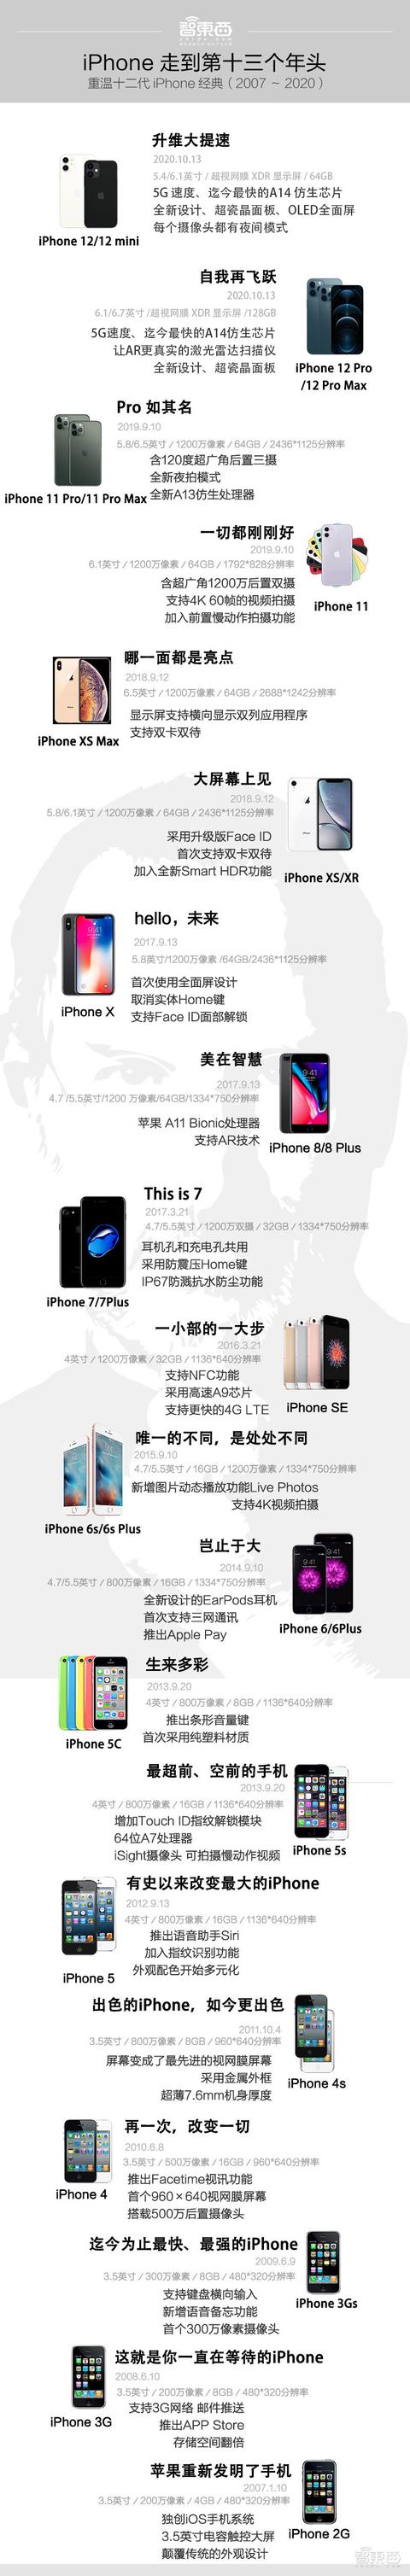 苹果手机联盟苹果手机中国官网-第21张图片-太平洋在线下载